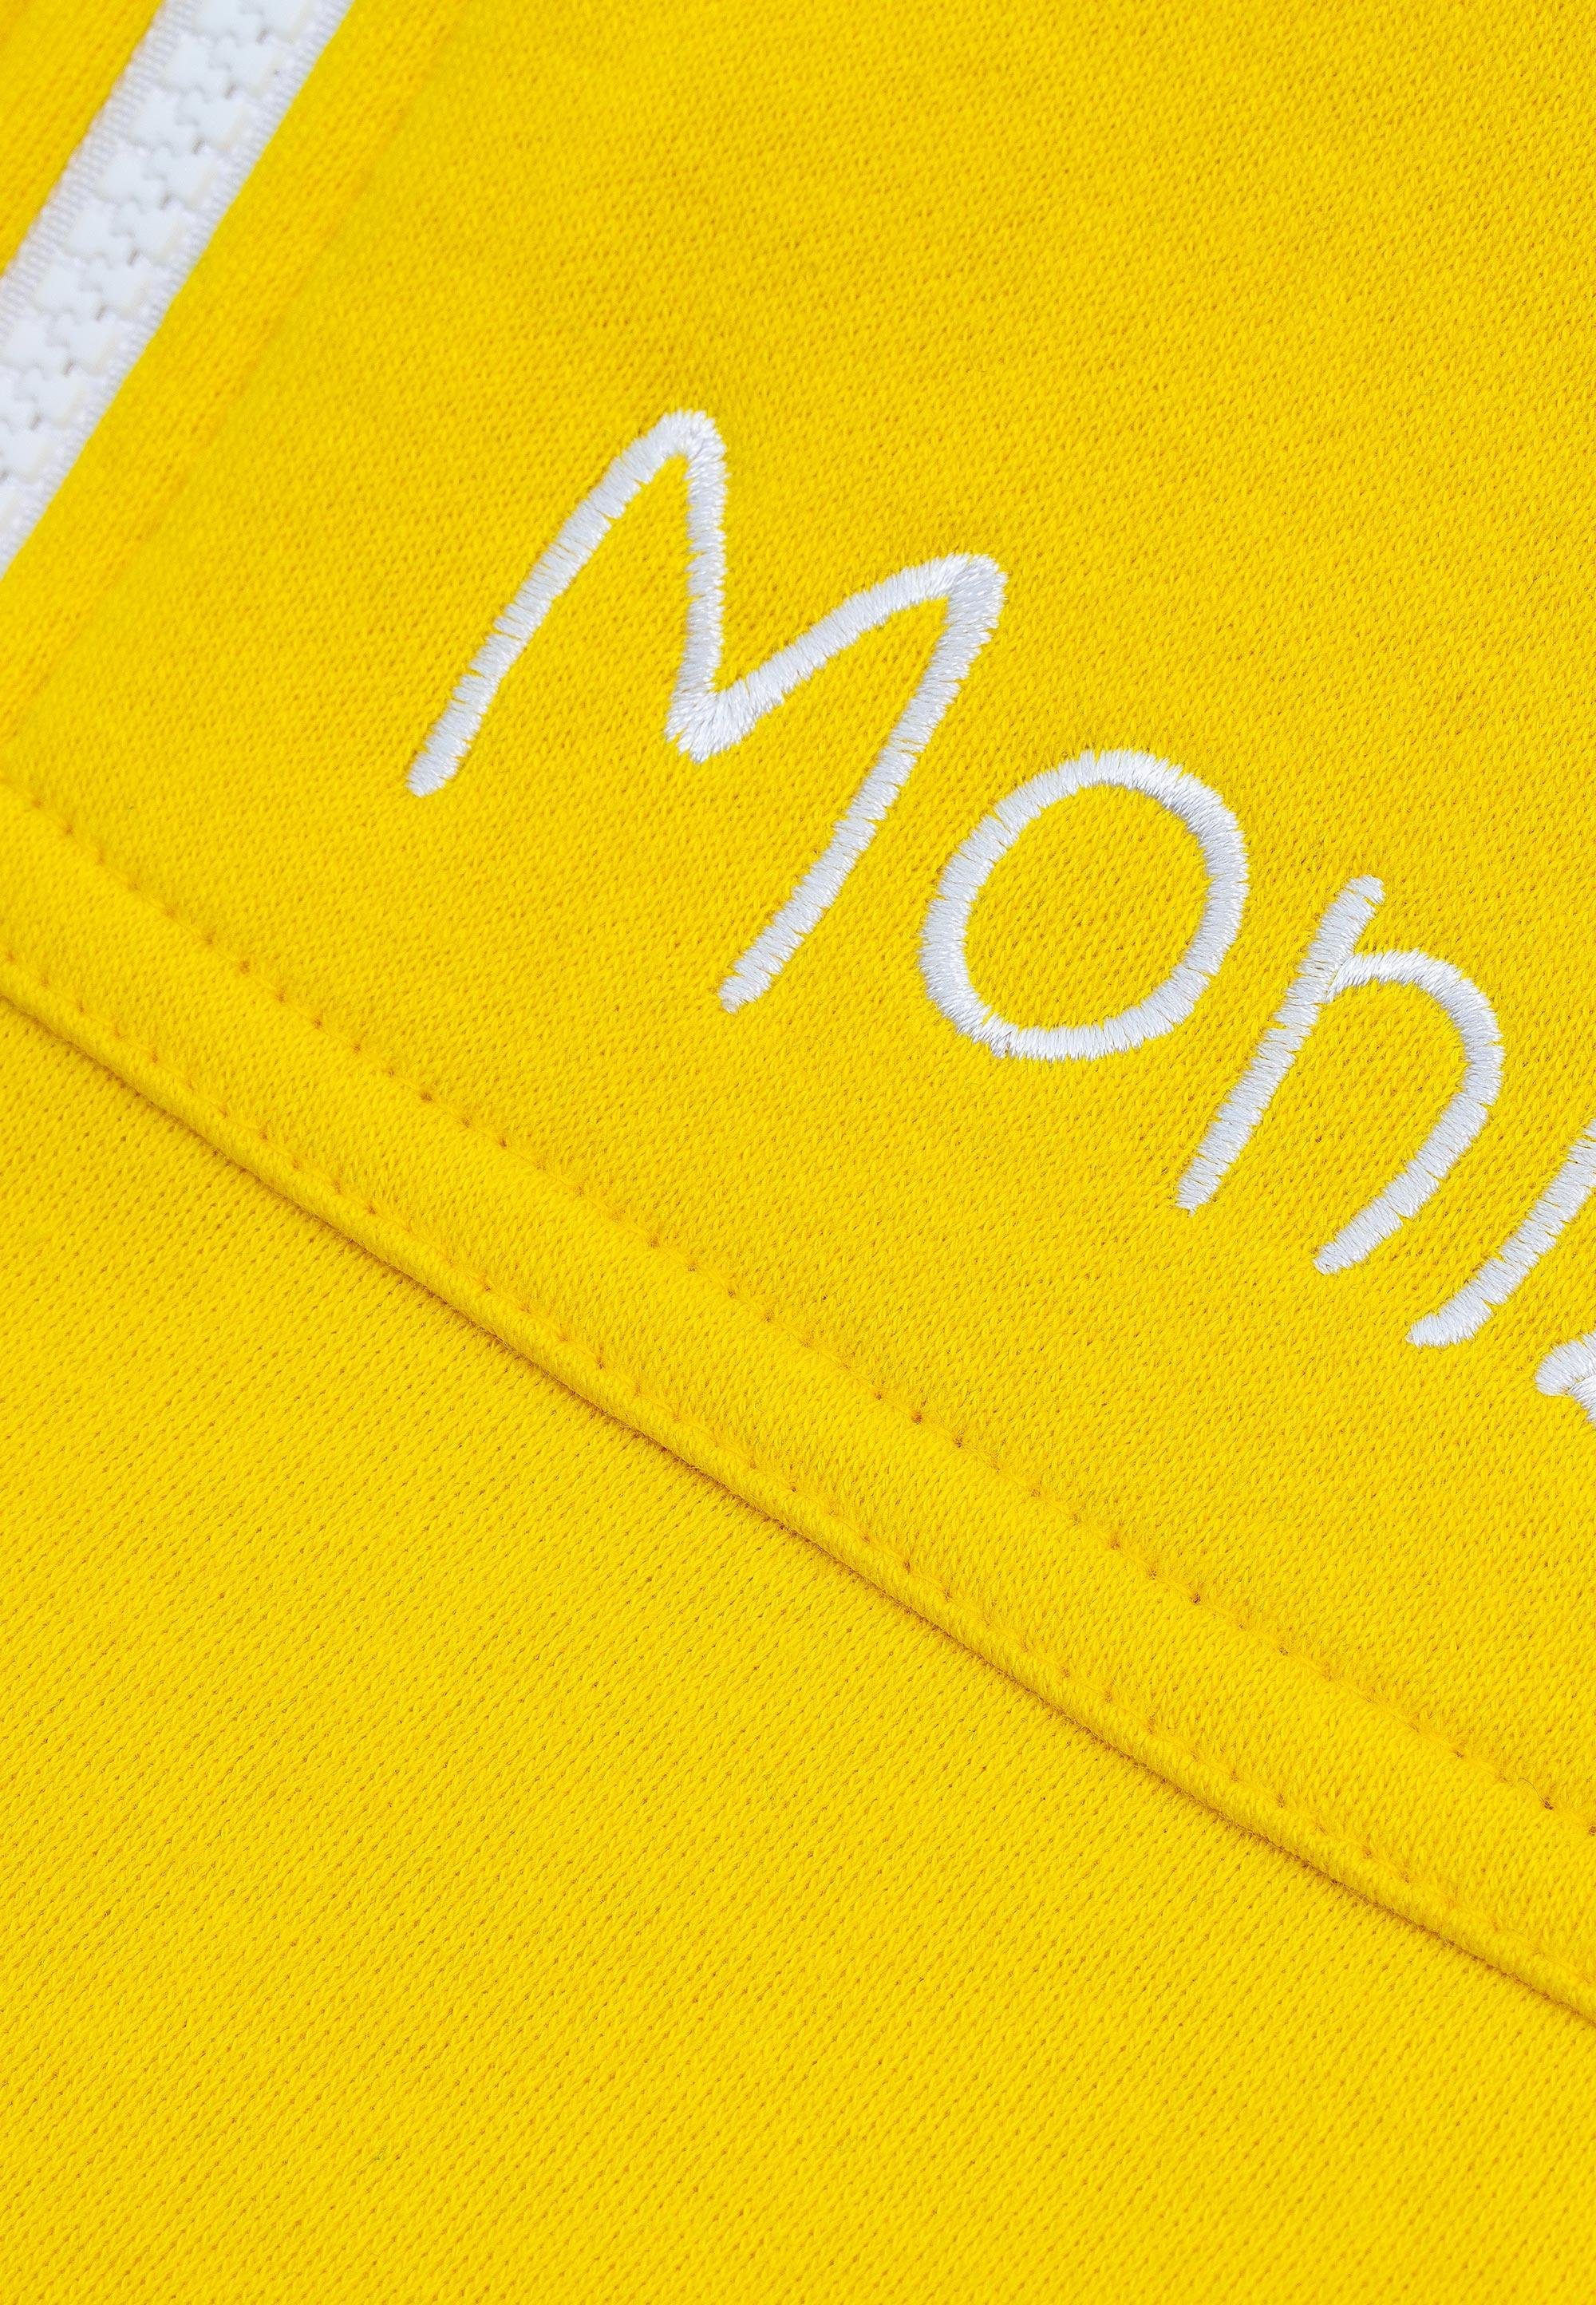 Moniz Jumpsuit aus kuschelig weichem Material gelb-weiß